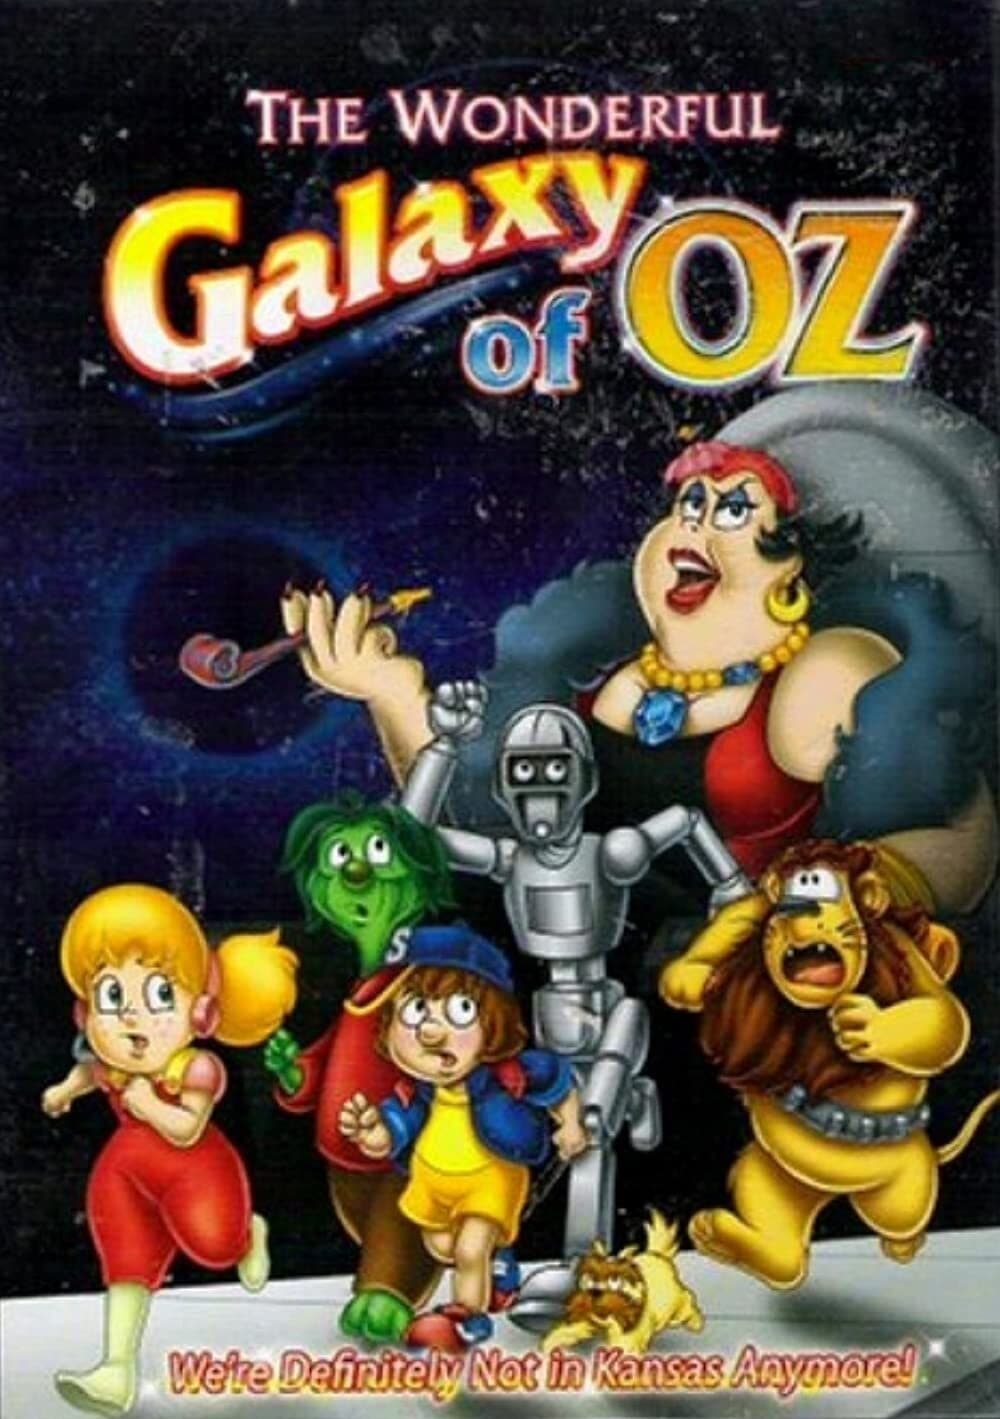 The Wonderful Galaxy of Oz (1996)